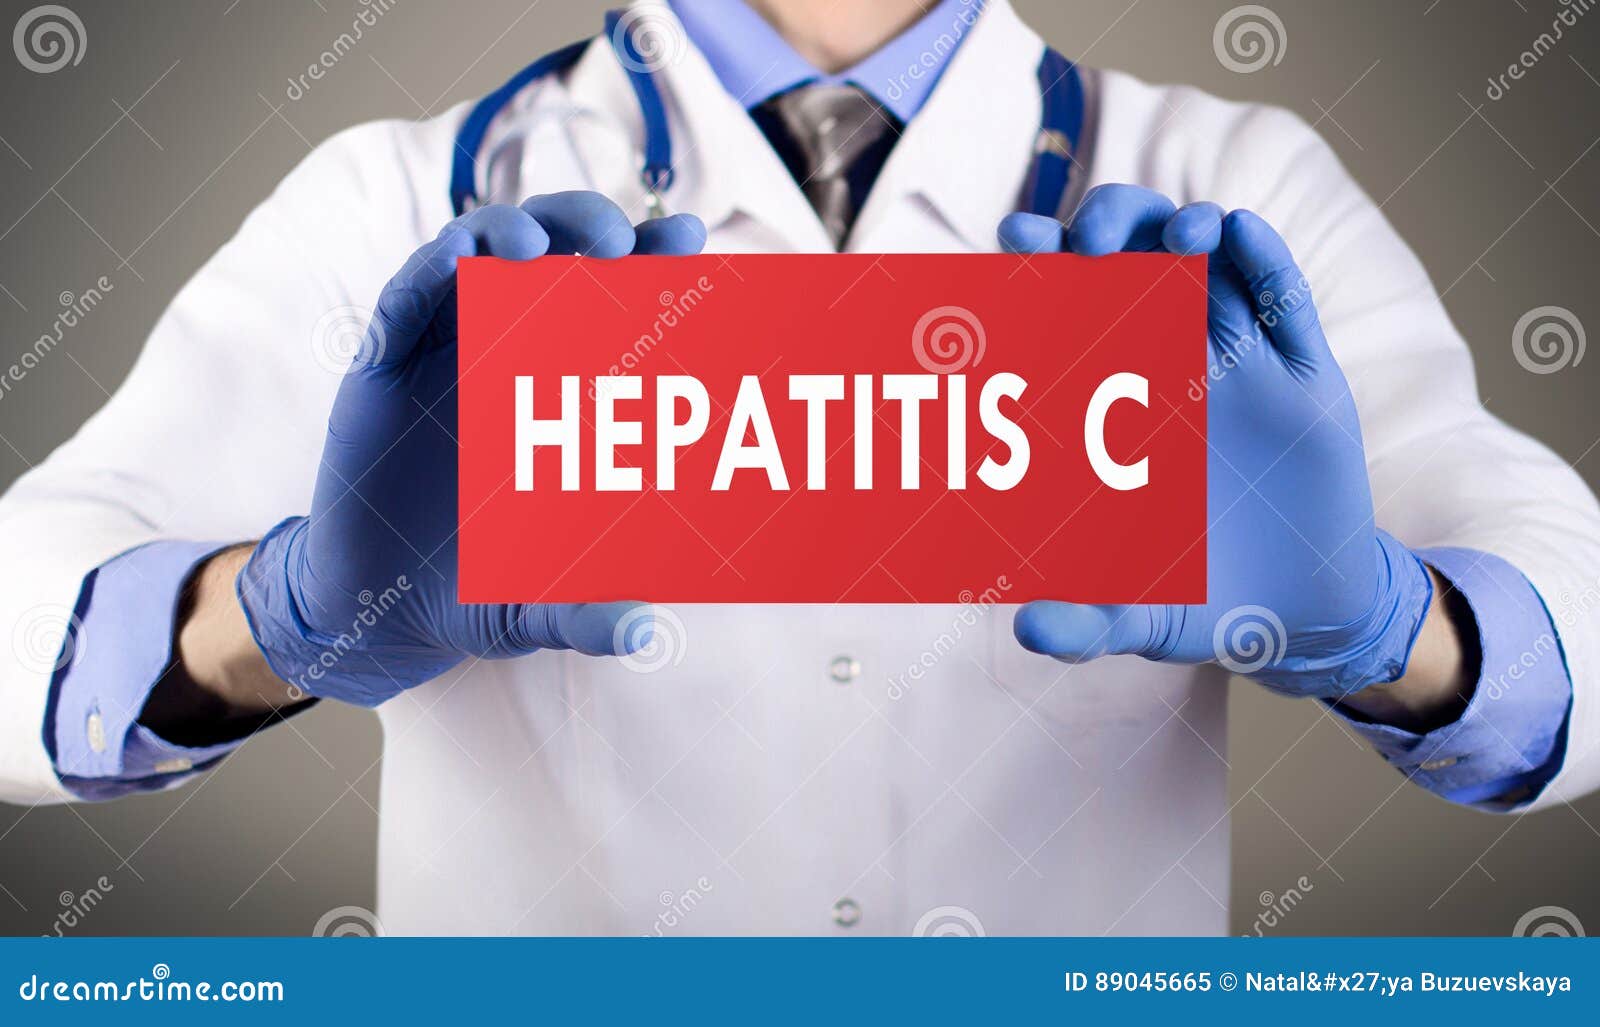 hepatitis c